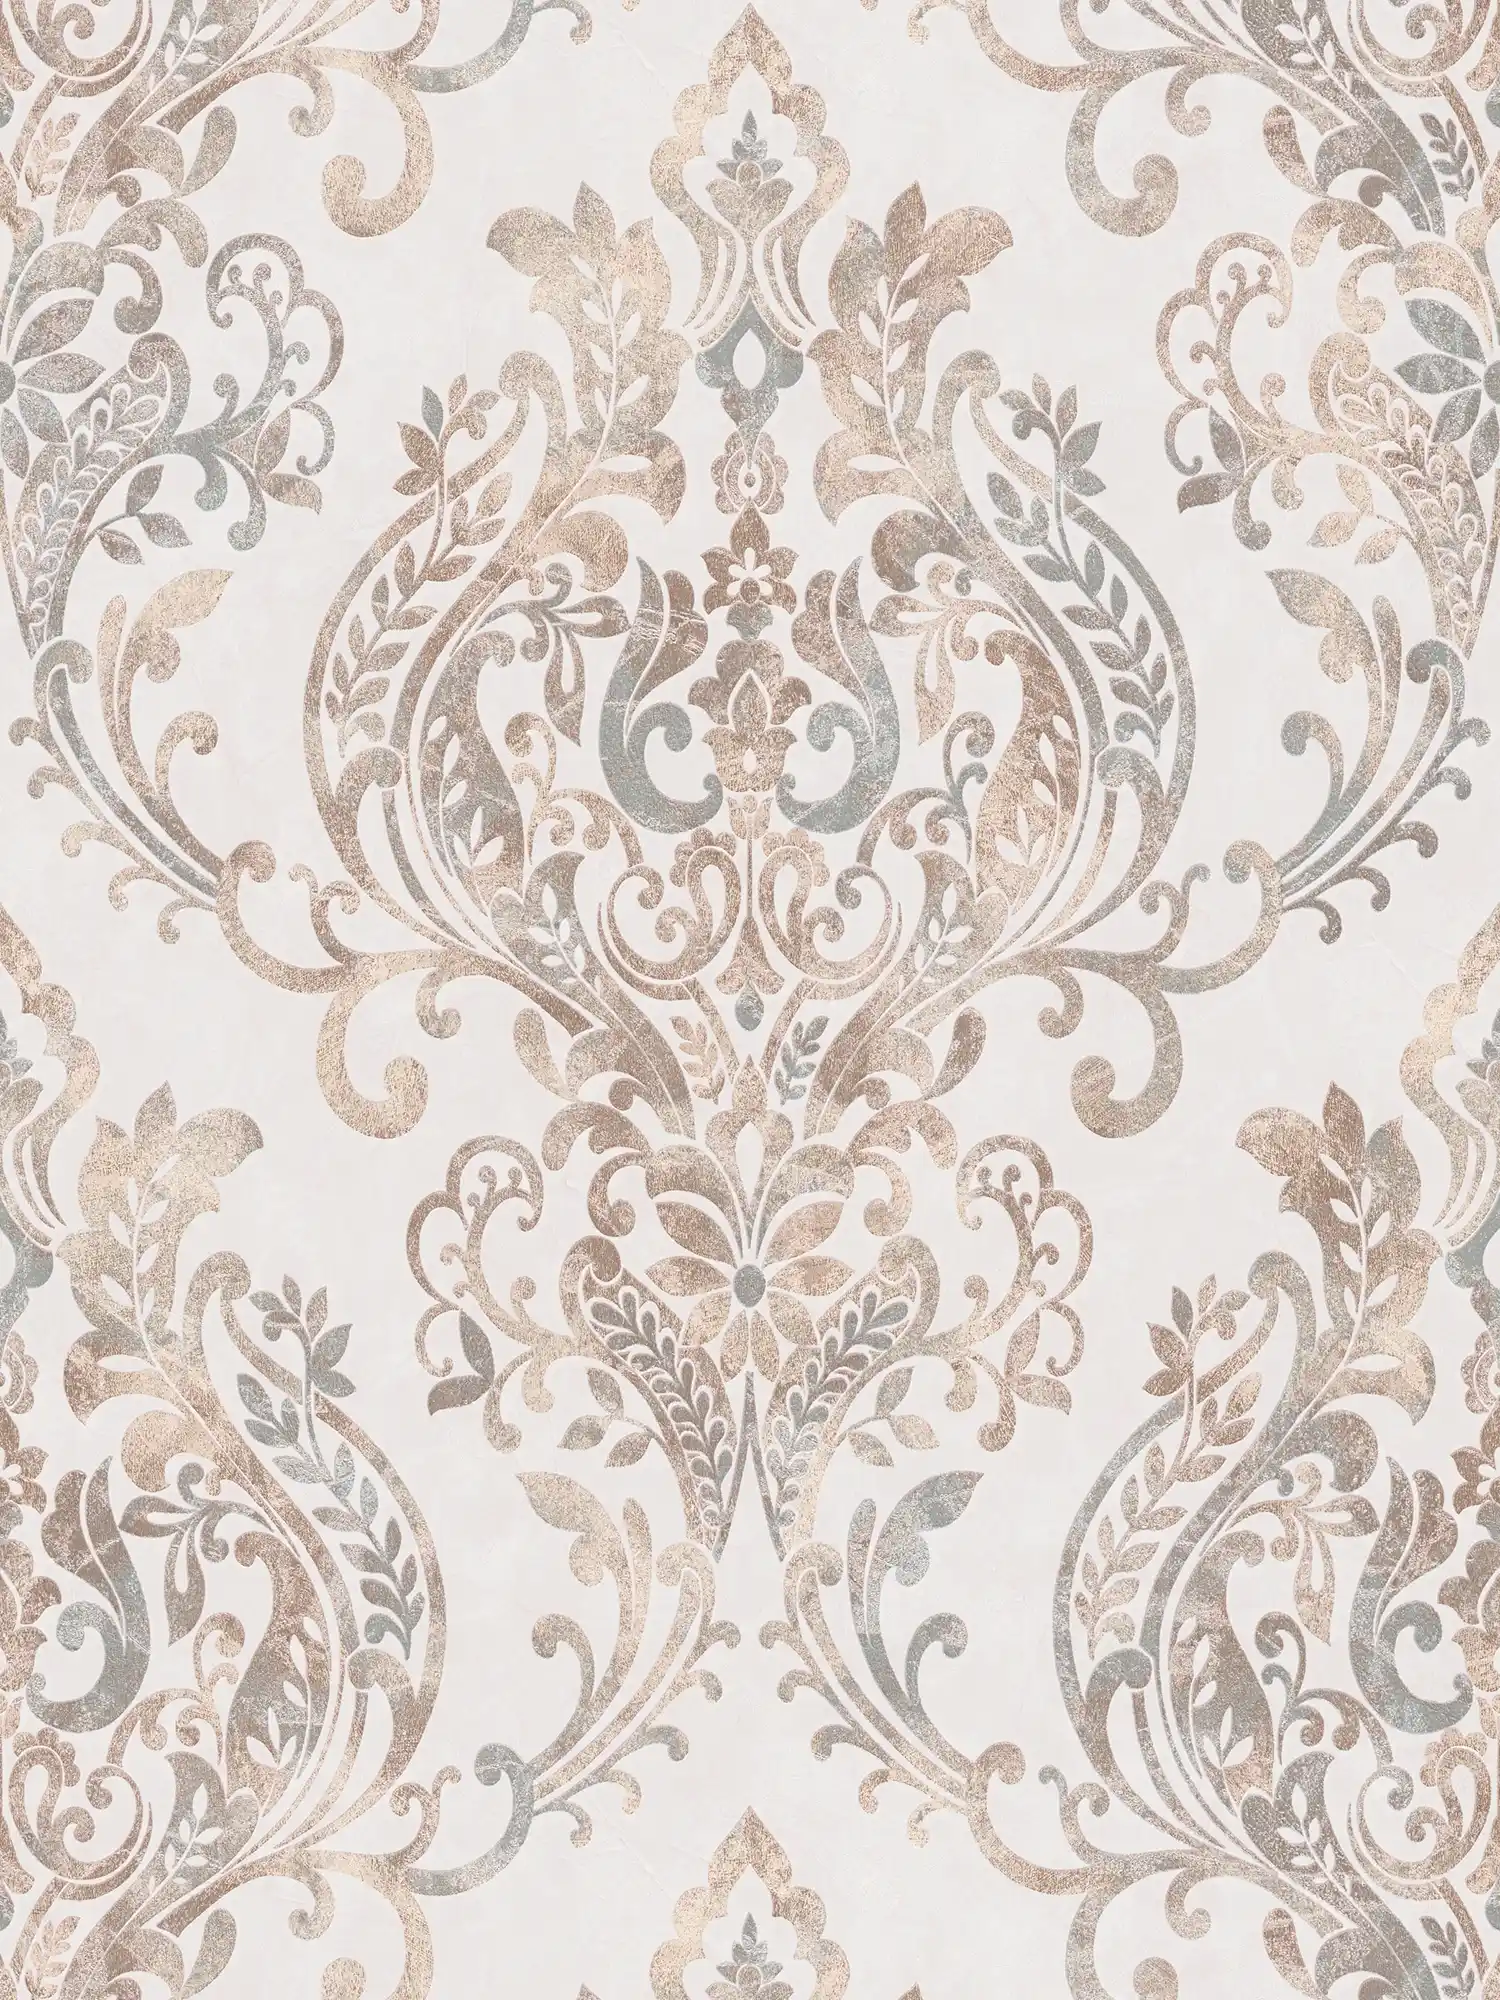 Ornament wallpaper vintage & floral design - cream, beige, pink
